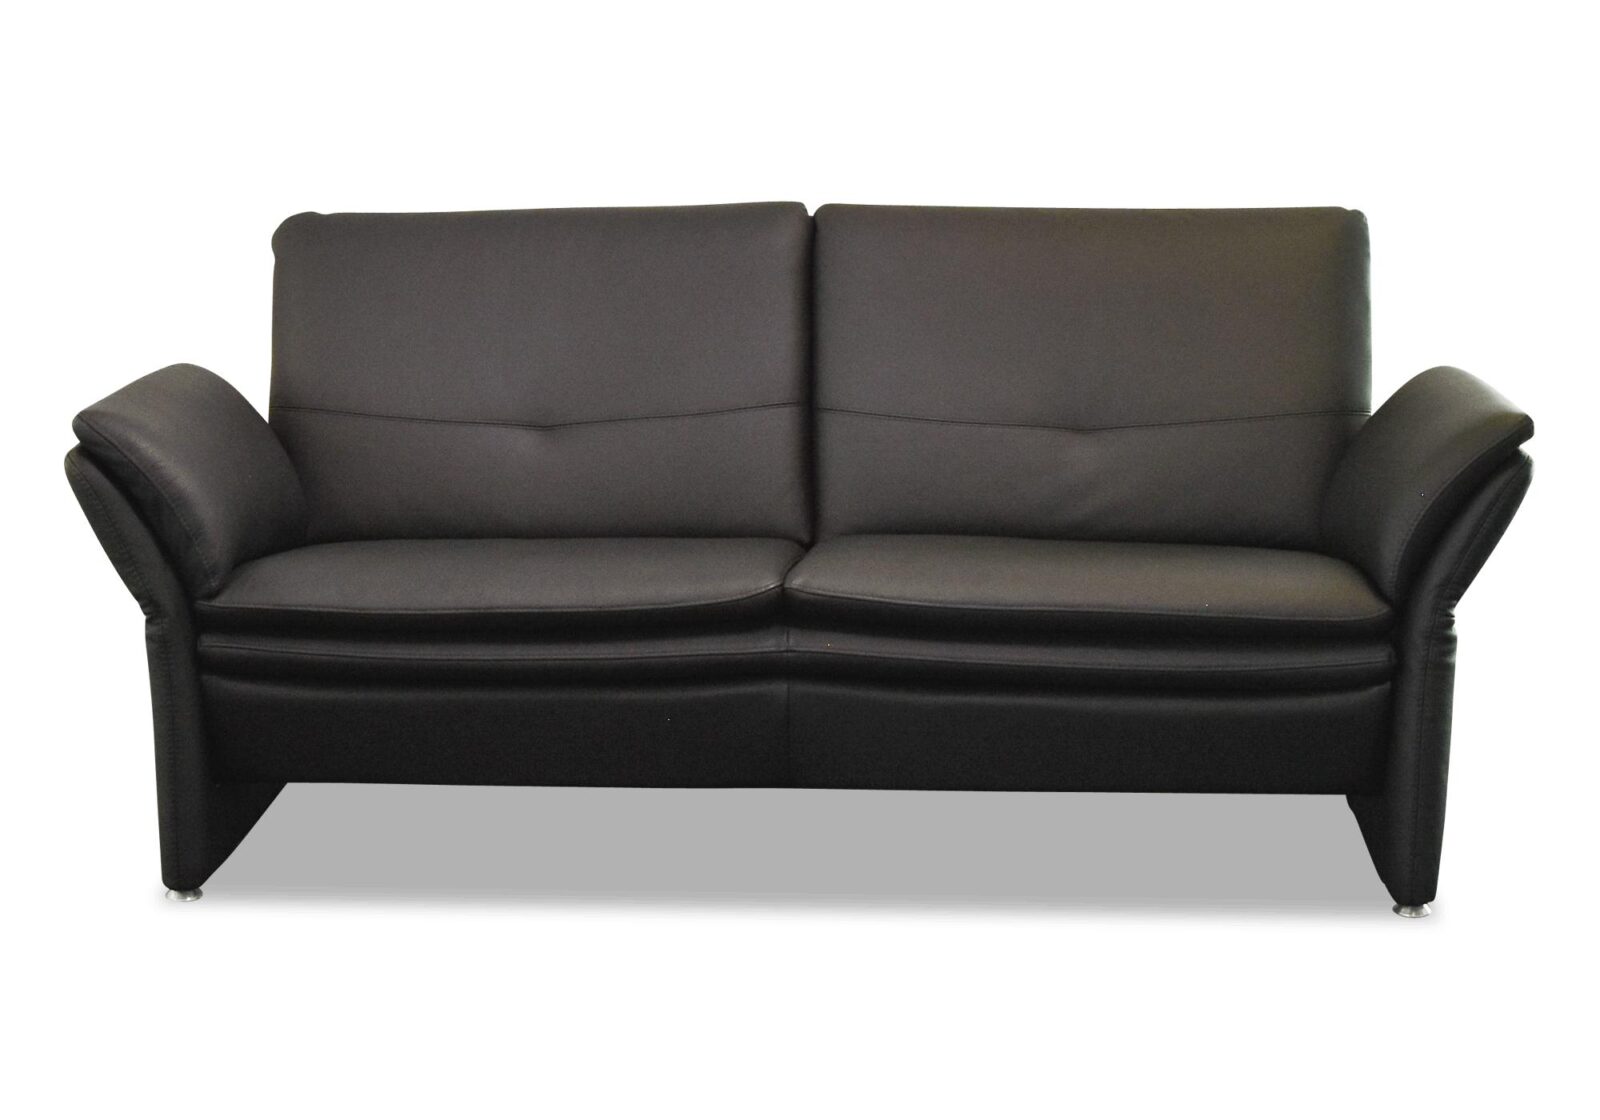 Sofa Florenz mit verstellbaren Armlehnen. Bezug: Leder. Farbe: Schwarz. Erhältlich bei Möbel Gallati.